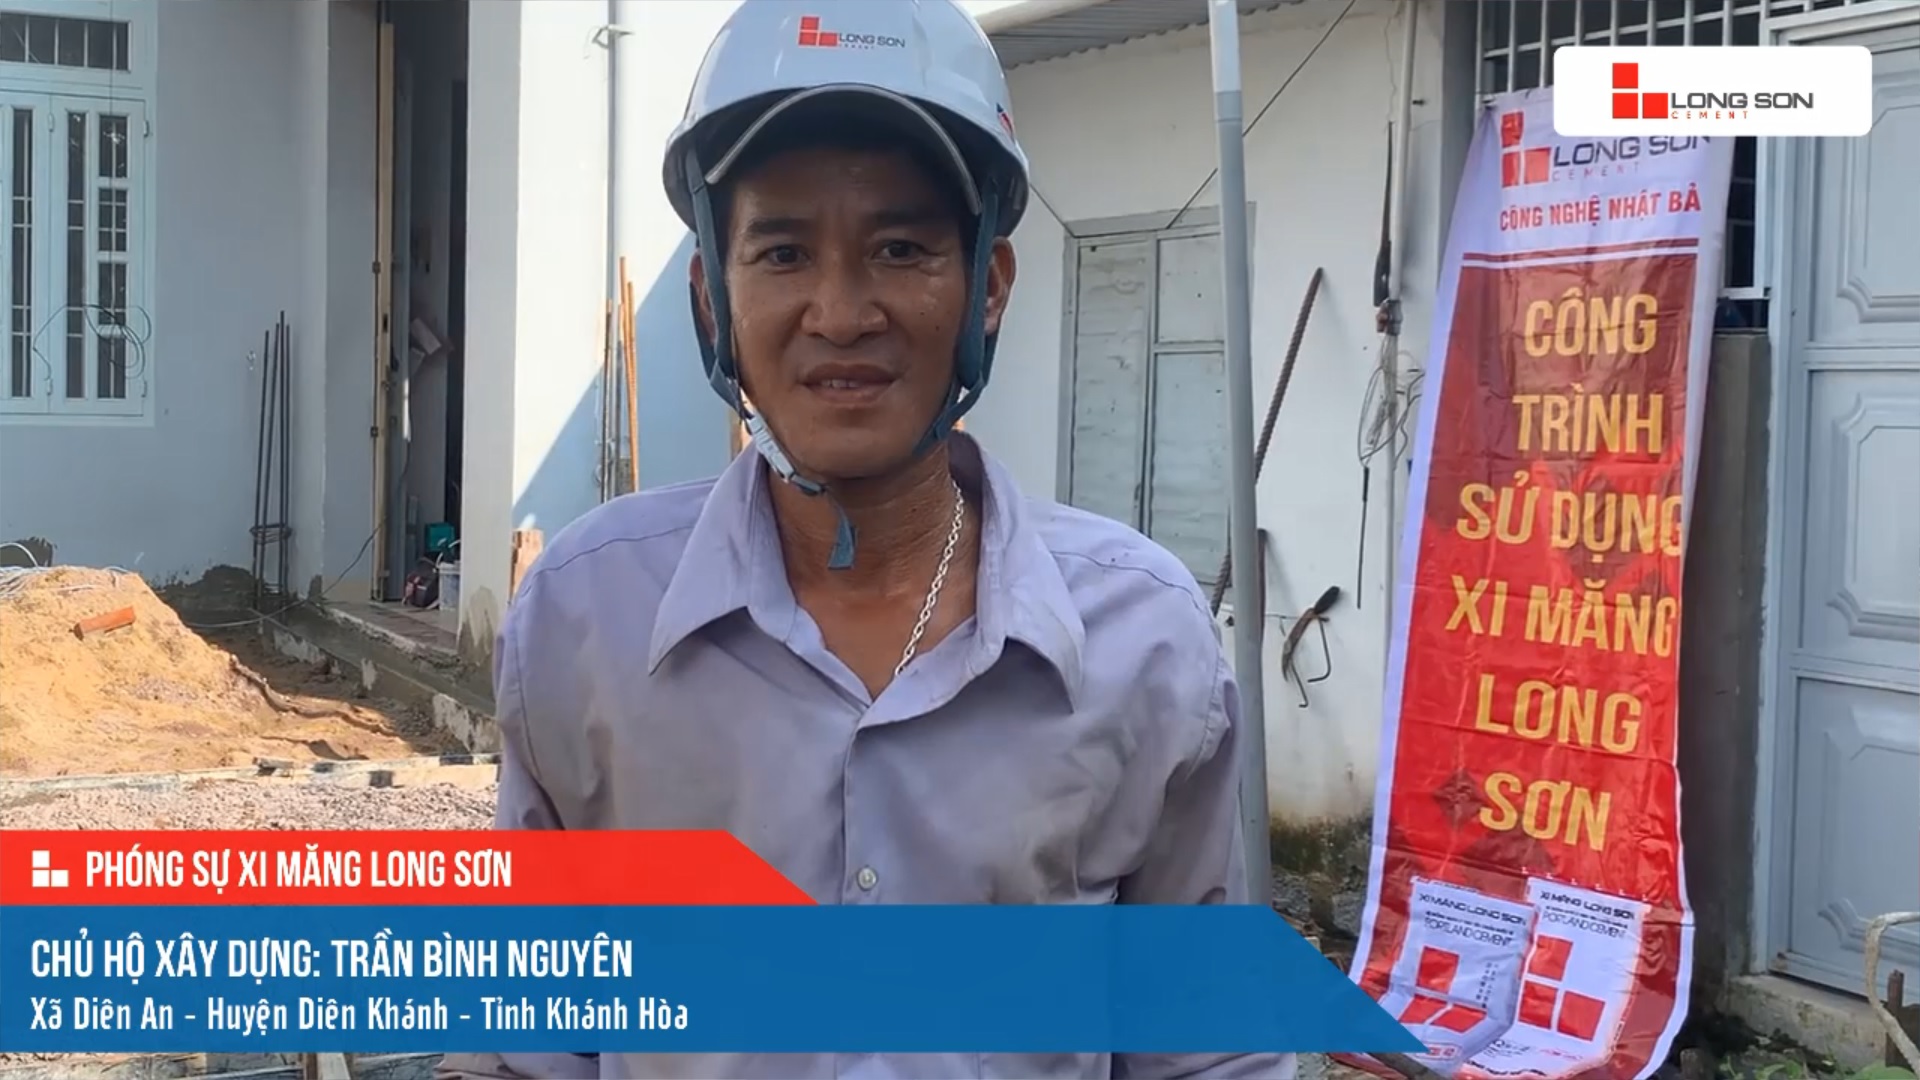 Phóng sự công trình sử dụng xi măng Long Sơn tại Khánh Hòa ngày 19/10/2021